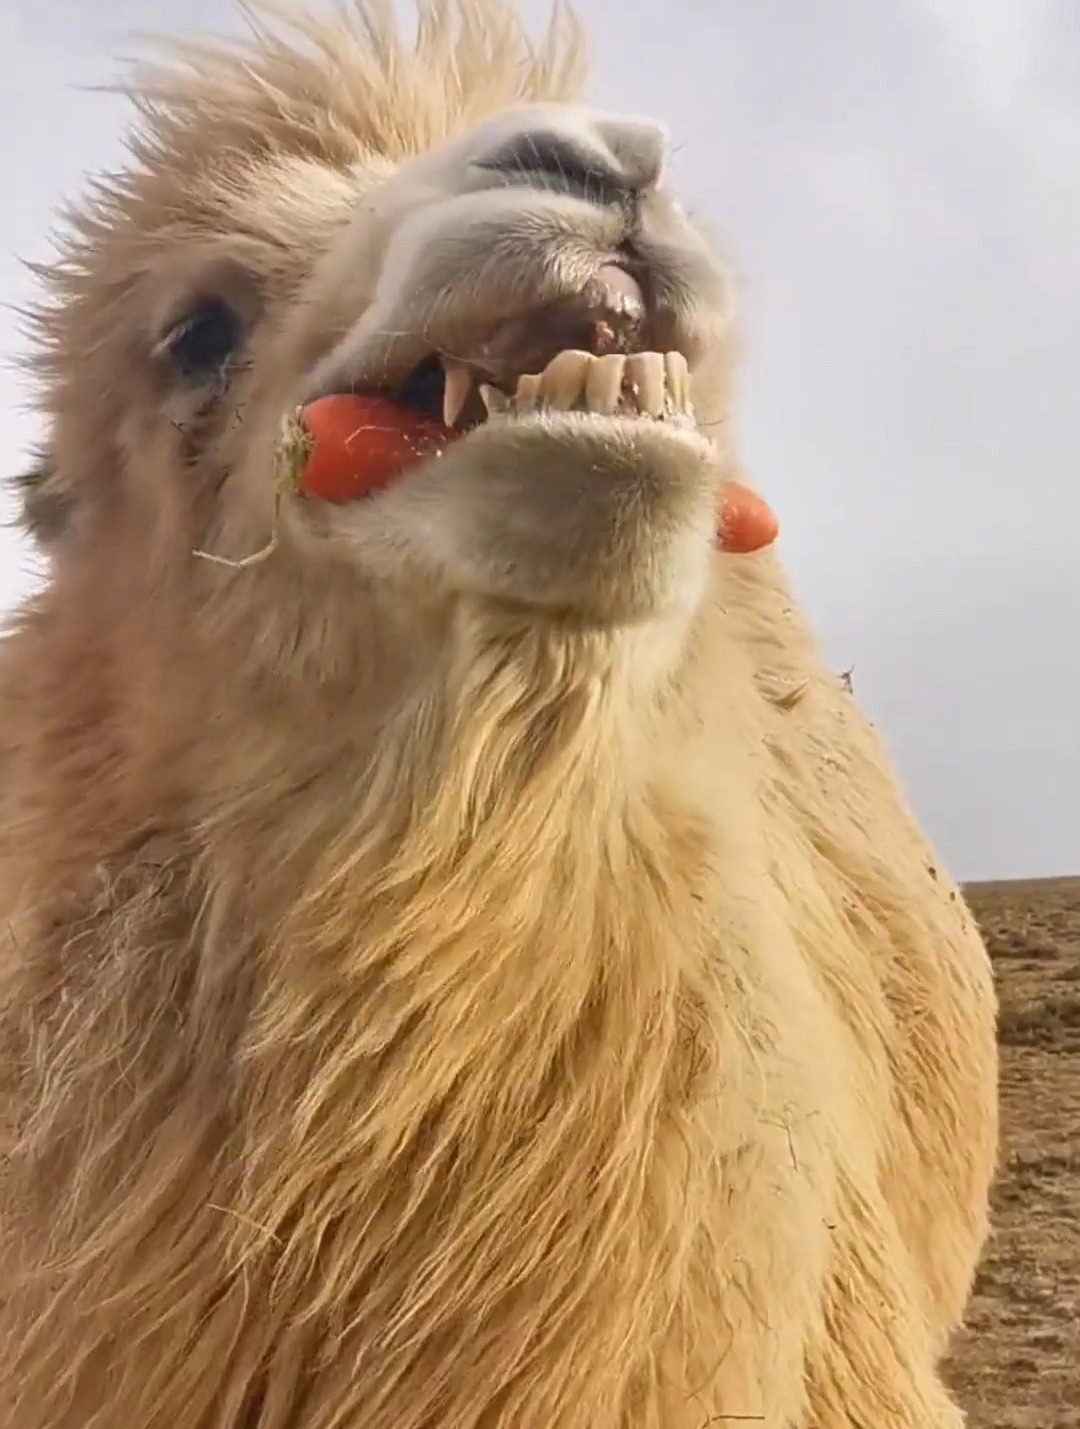 骆驼牙齿照片图片